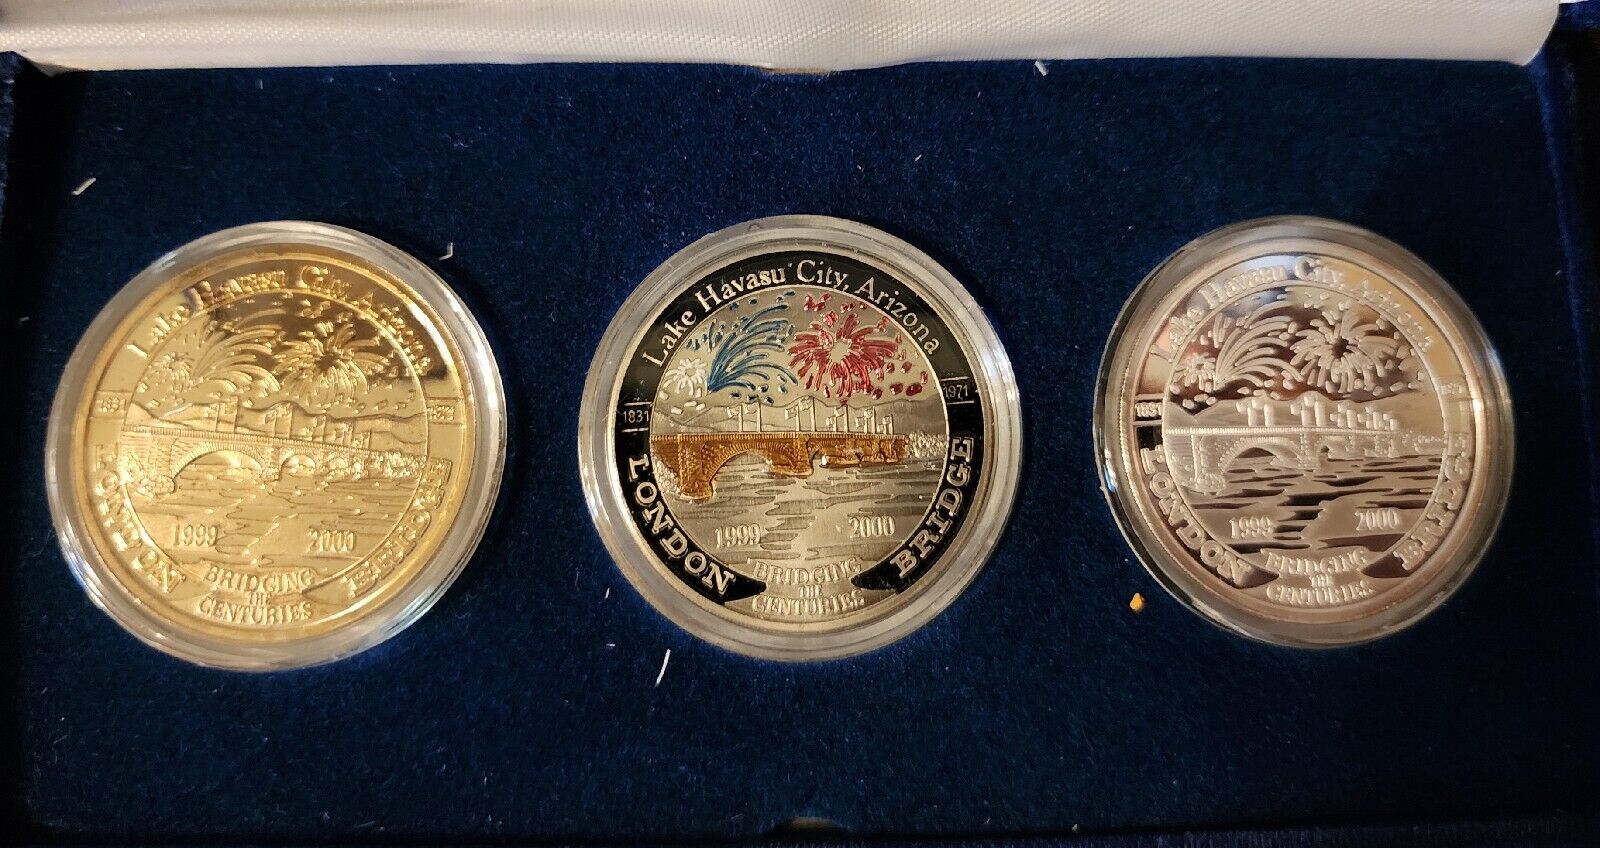 3 London Bridge Rotary Lake Havasu Silver .999 1999-2000 29th Annv. Coin 